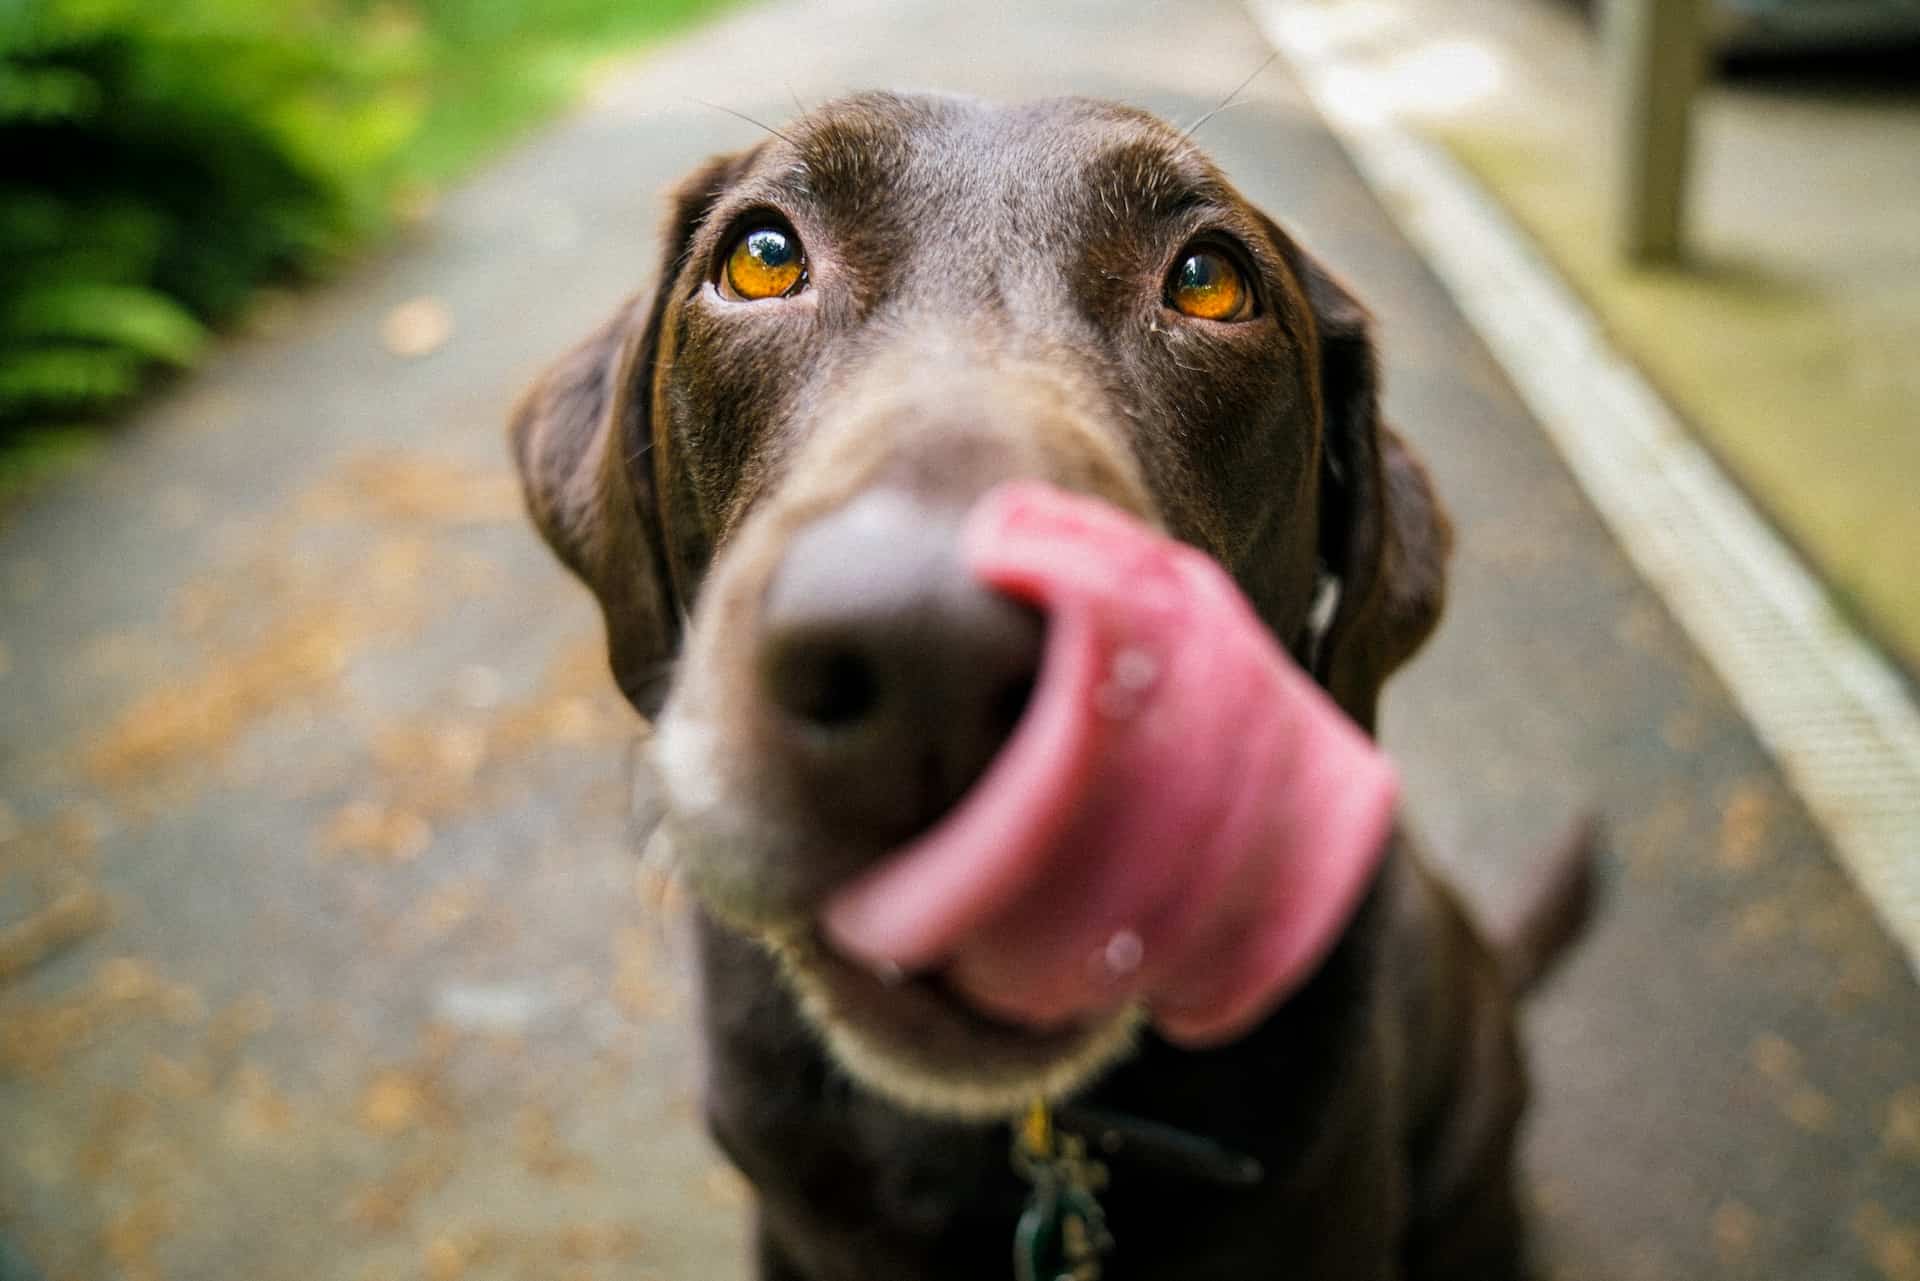 Hund gesund ernähren: 5 wichtige Tipps_Die Hundezeitung. Hund in Großaufnahme, der sich mit der Zunge über die Nase leckt. /Foto: James Barker (unsplash)